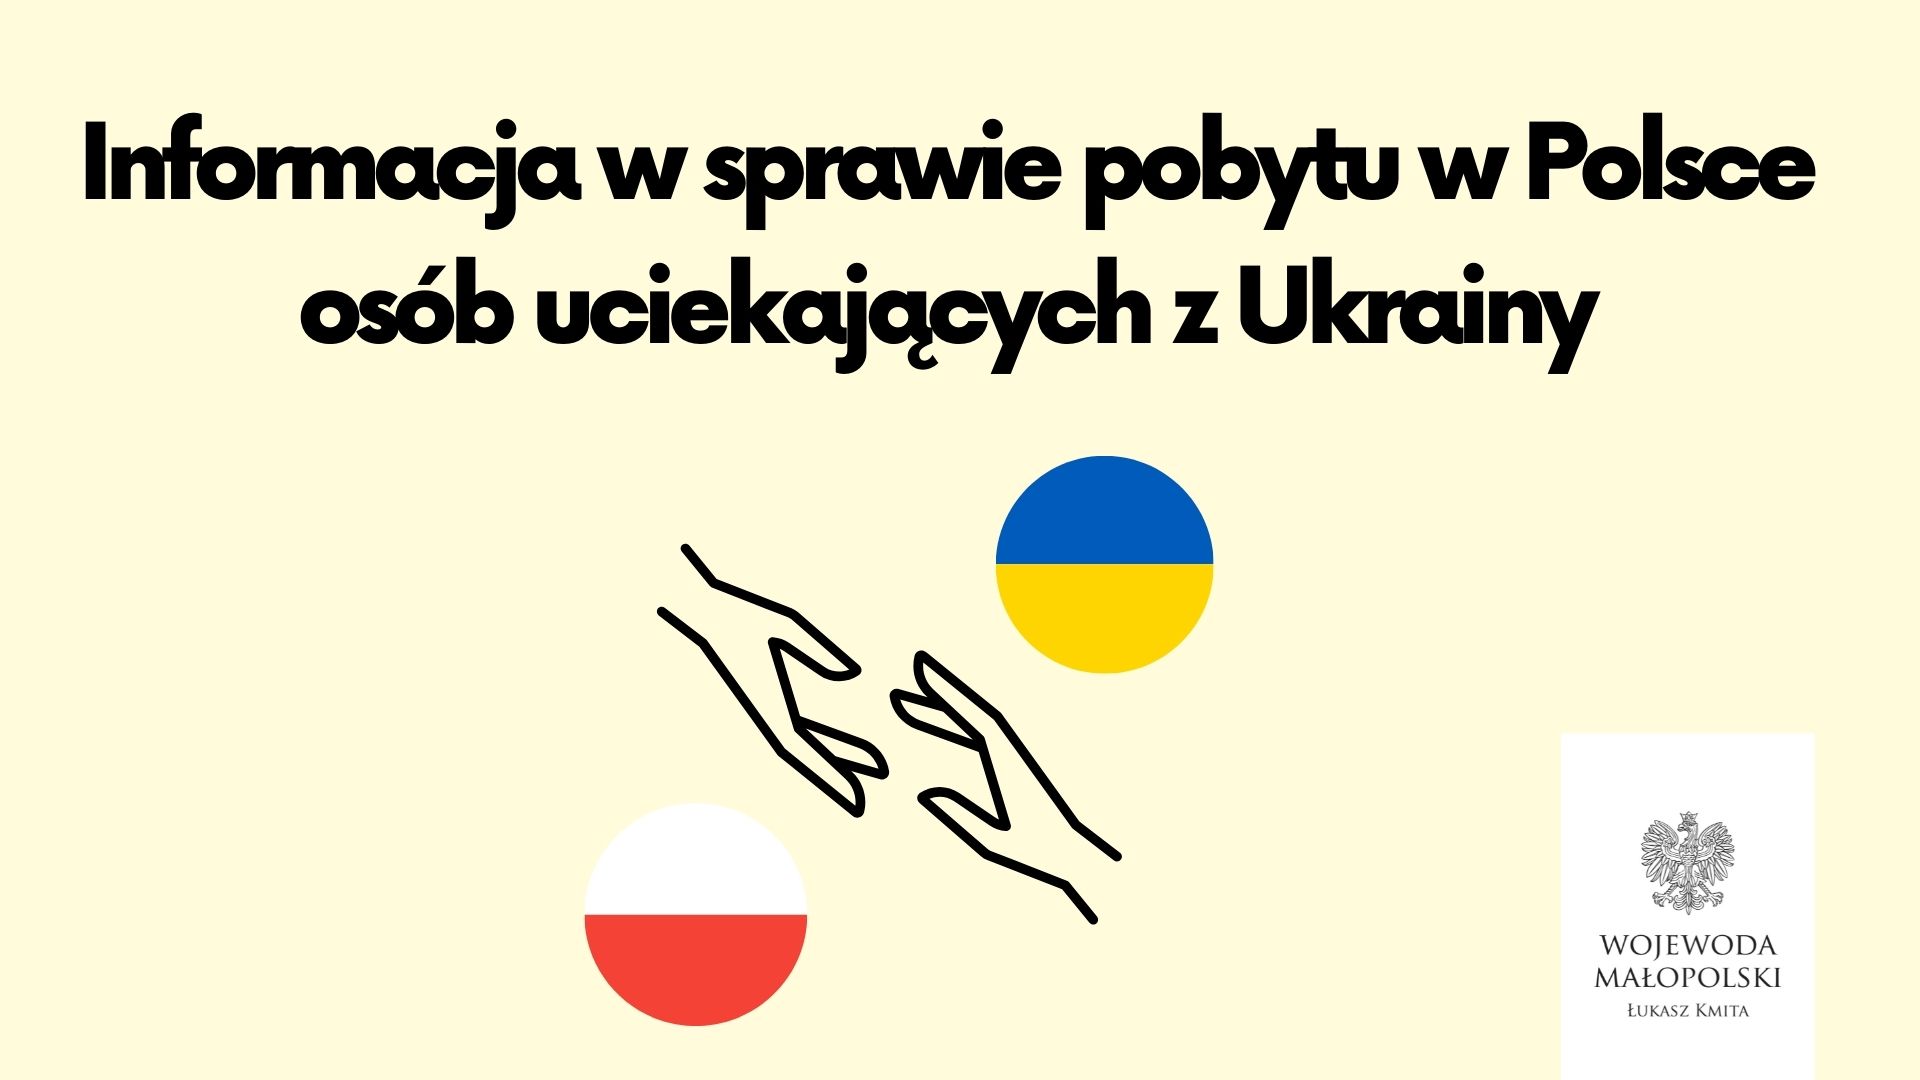 Zdjęcie dotykające się dłonie i flagi Ukrainy i Polski